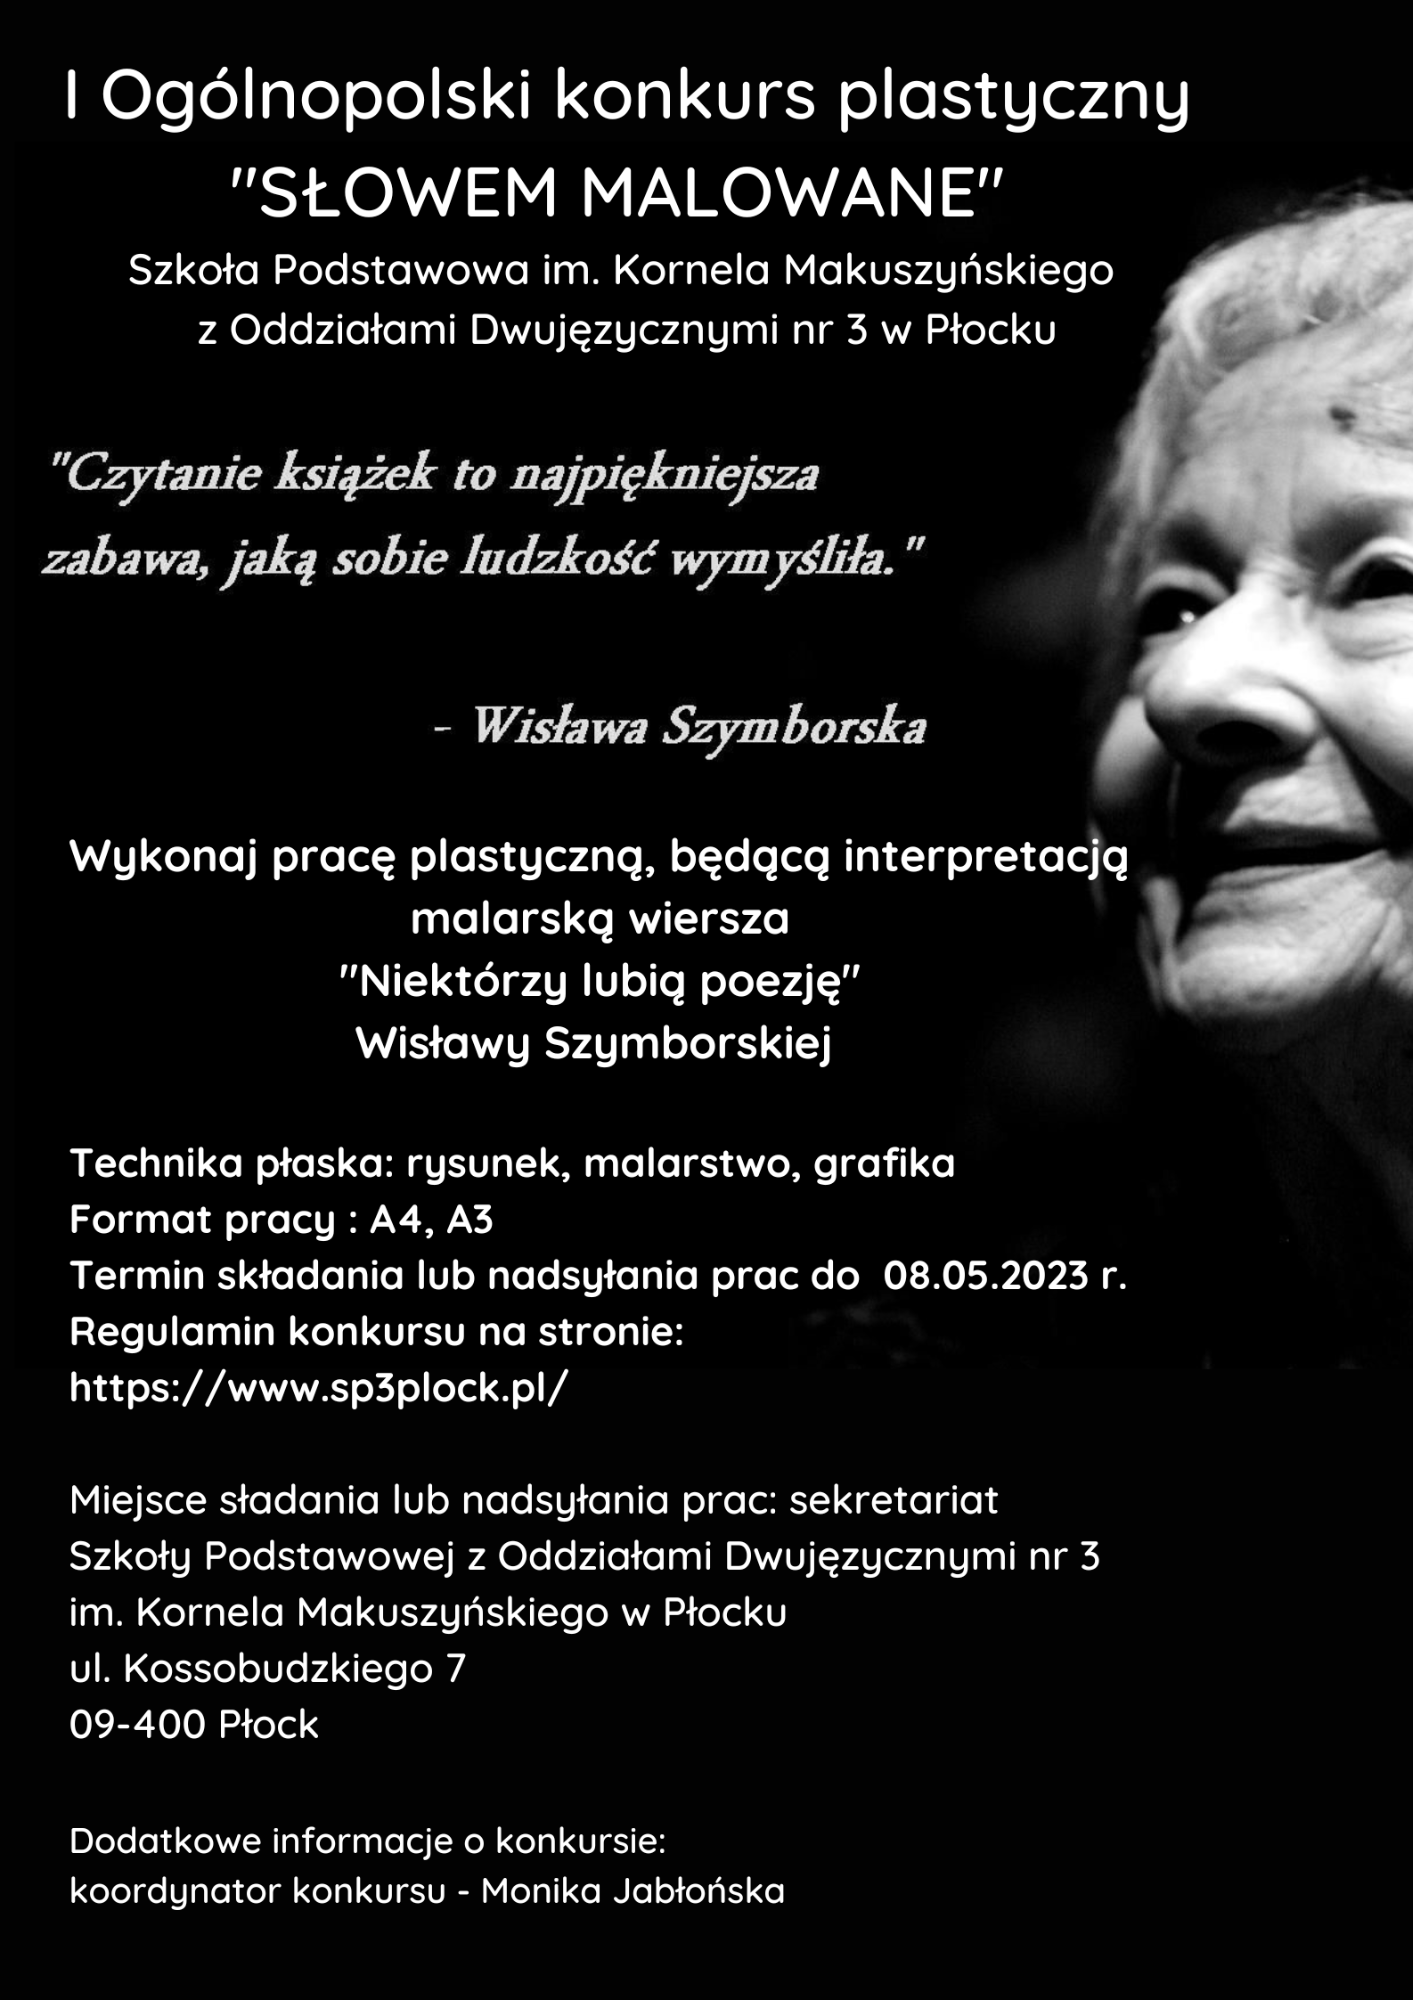 I Ogólnopolski Konkurs Plastyczny „SŁOWEM MALOWANE” z okazji 100 rocznicy urodzin Wisławy Szymborskiej